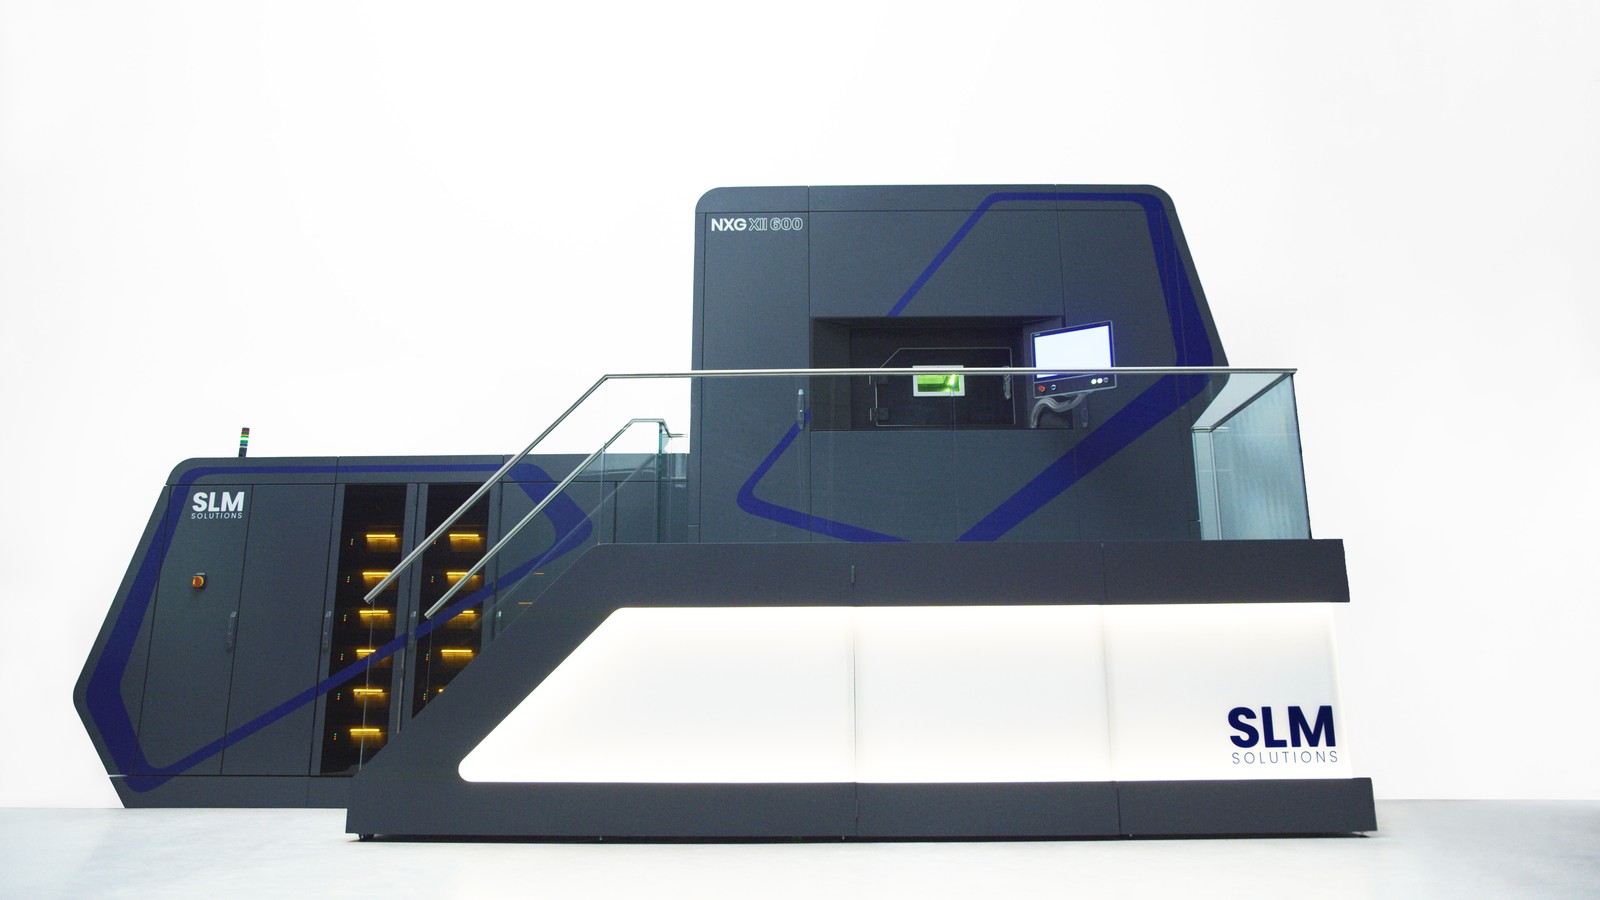 Die Serienproduktion von großen Metallbauteilen ermöglicht die SLM-Maschine NXG XII 600 mit 12 Lasern. 